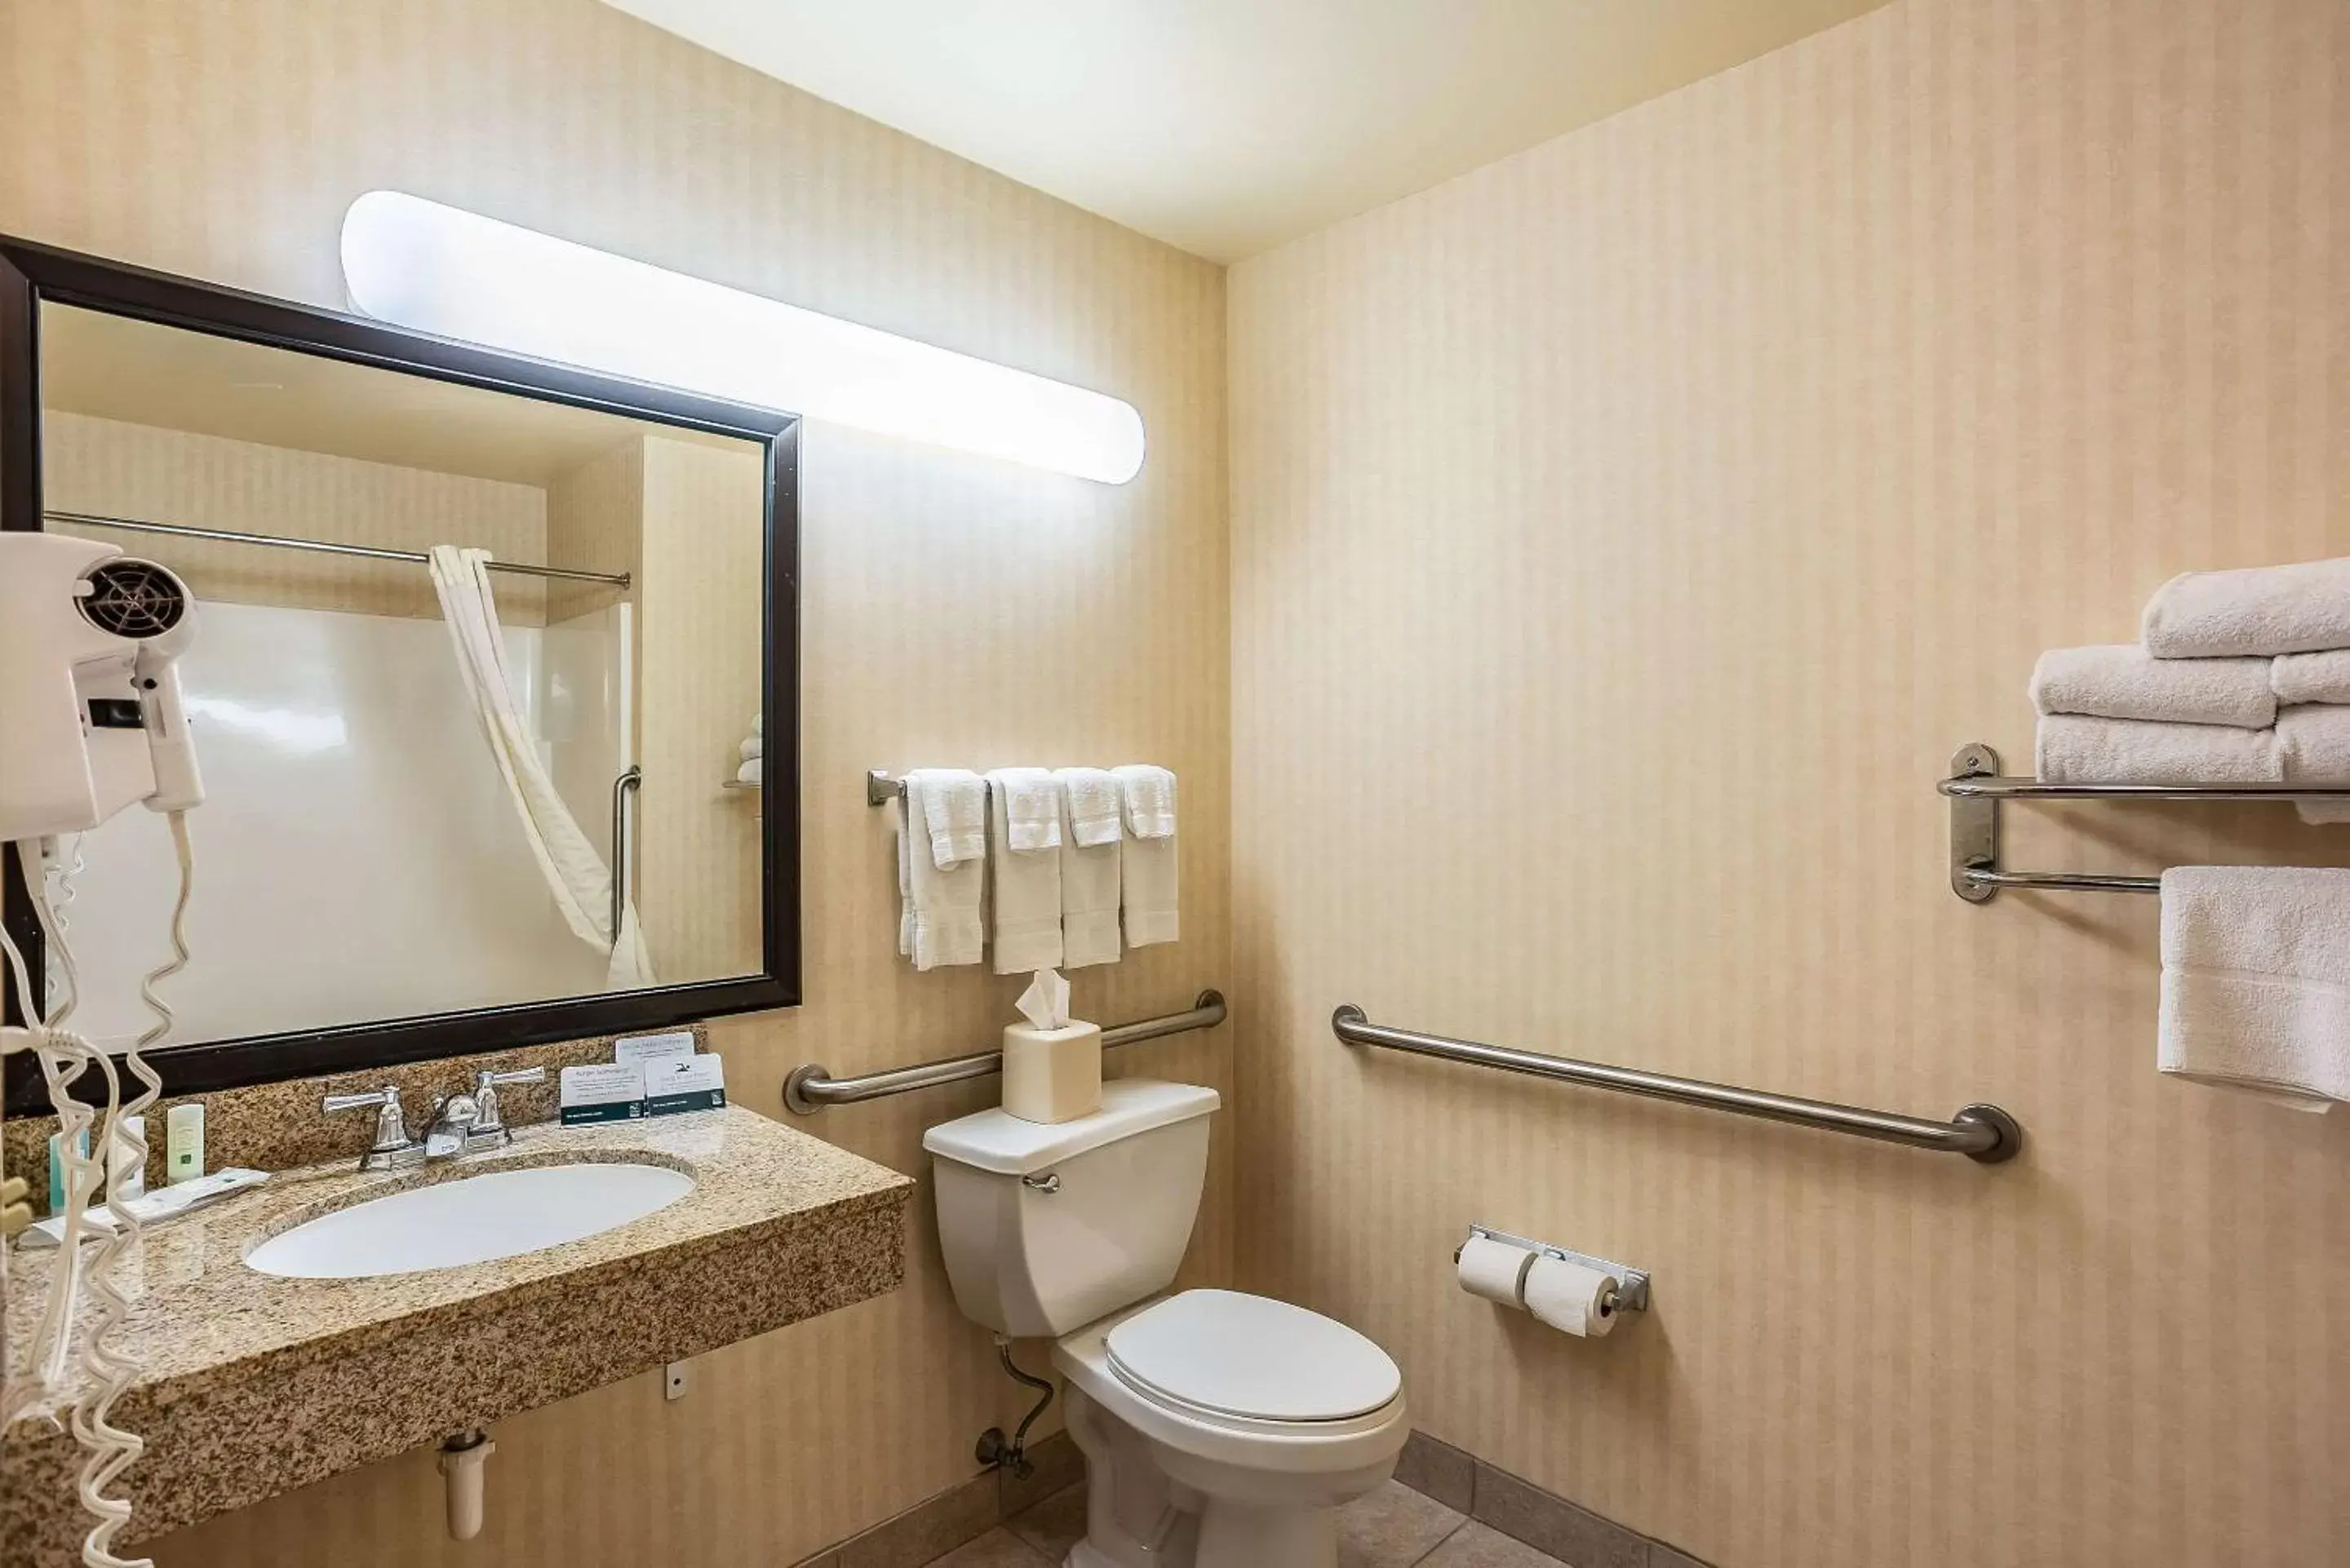 Bedroom, Bathroom in Quality Inn & Suites Hannibal